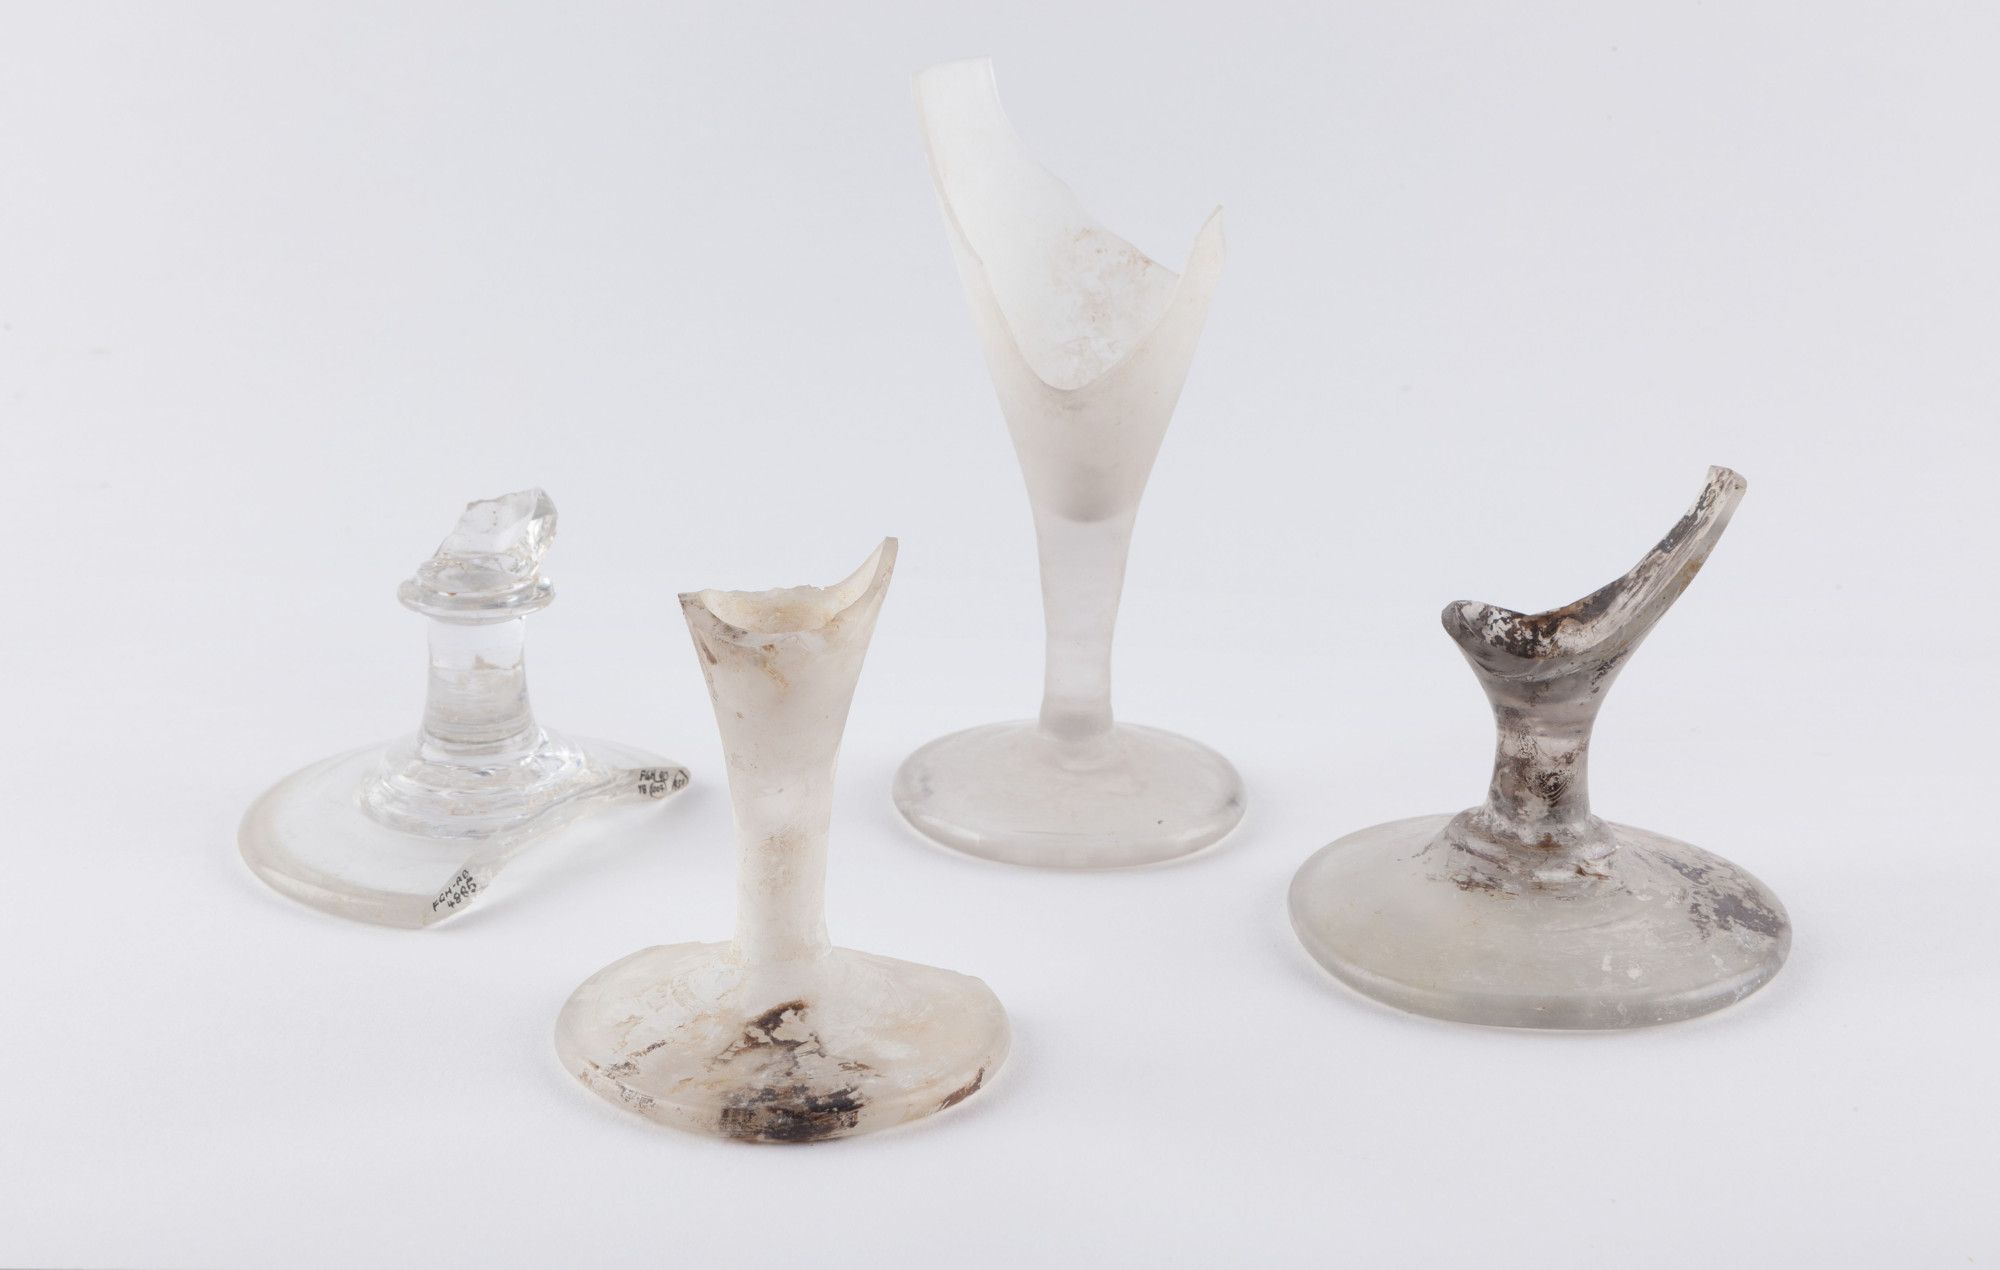 Bases of stemmed glassware 